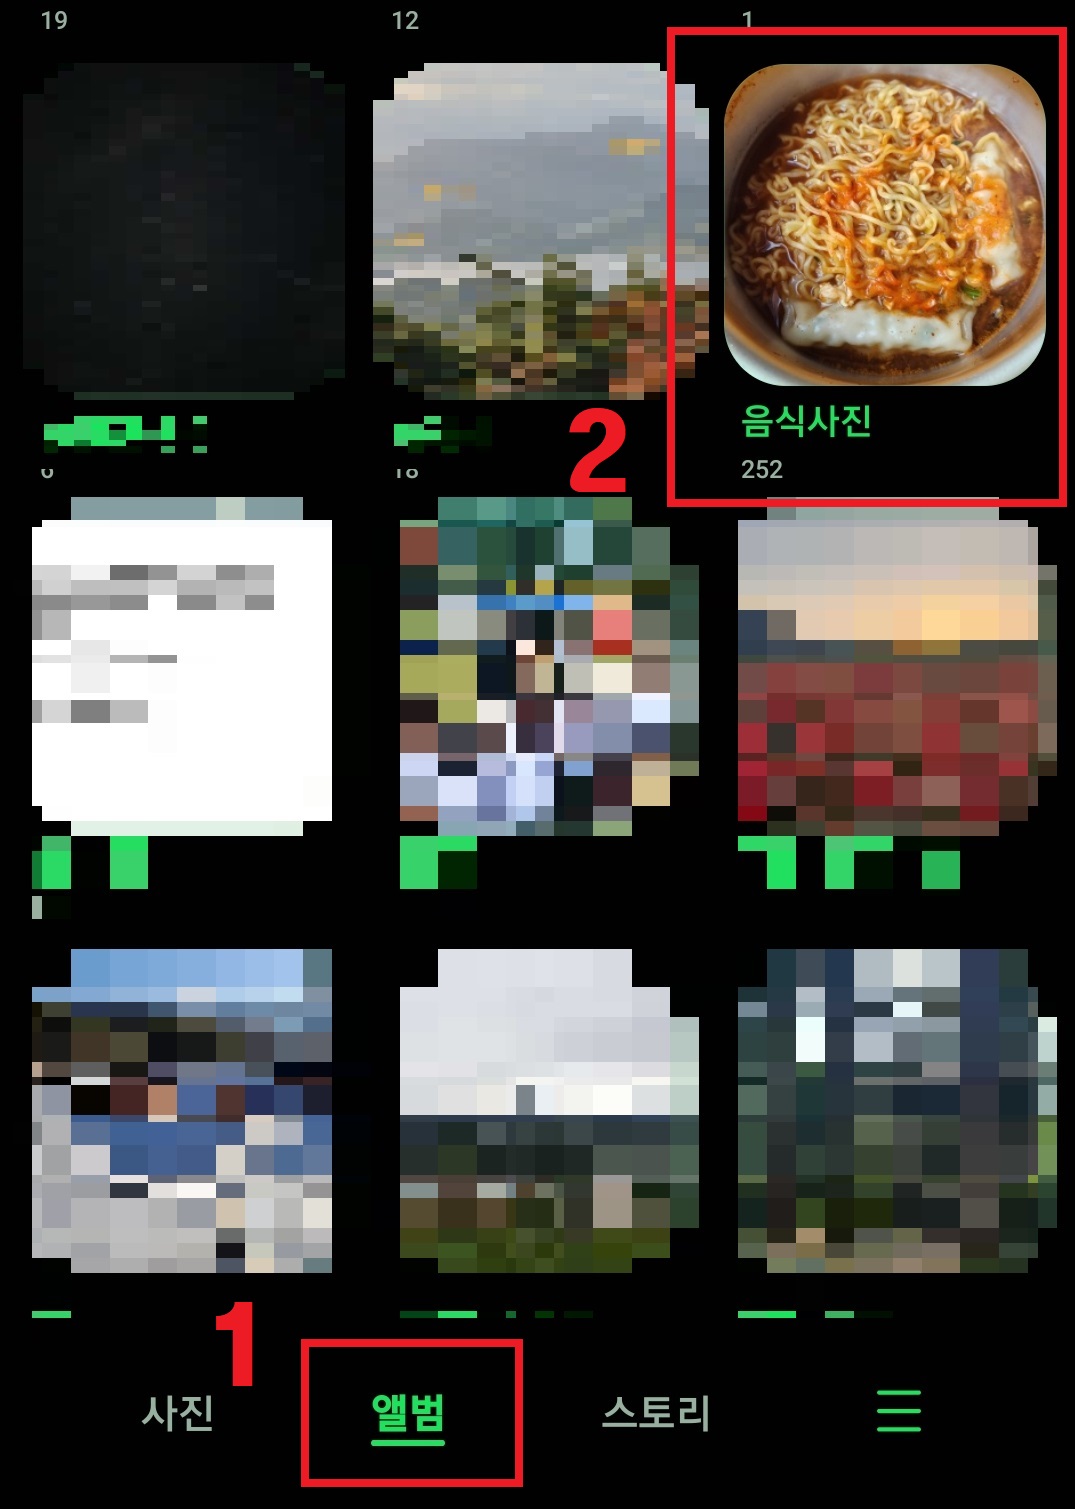 삼성 갤럭시 스마트폰 기본 갤러리 앱에서 사진 및 이미지 합치는 방법(이미지 콜라주) 3